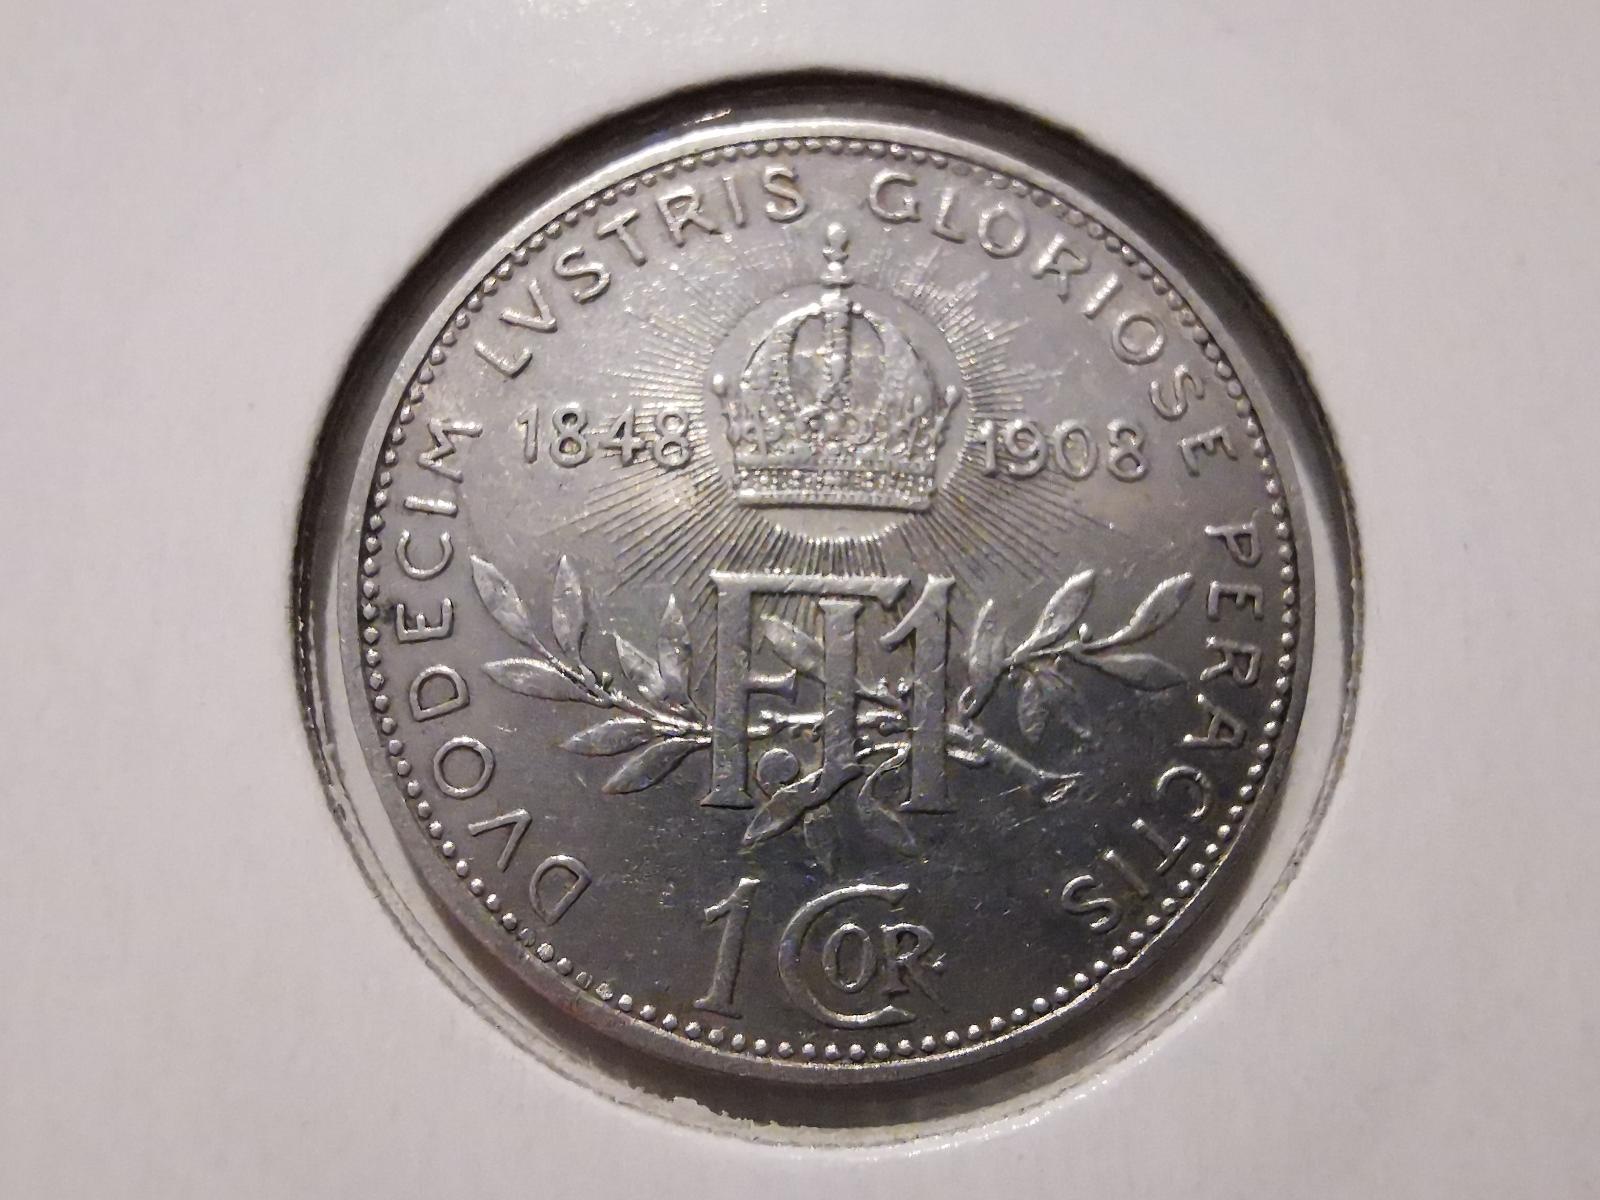 Strieborná 1 koruna 1908 bz – 60. výročie panovania Františka Jozefa I. - Numizmatika